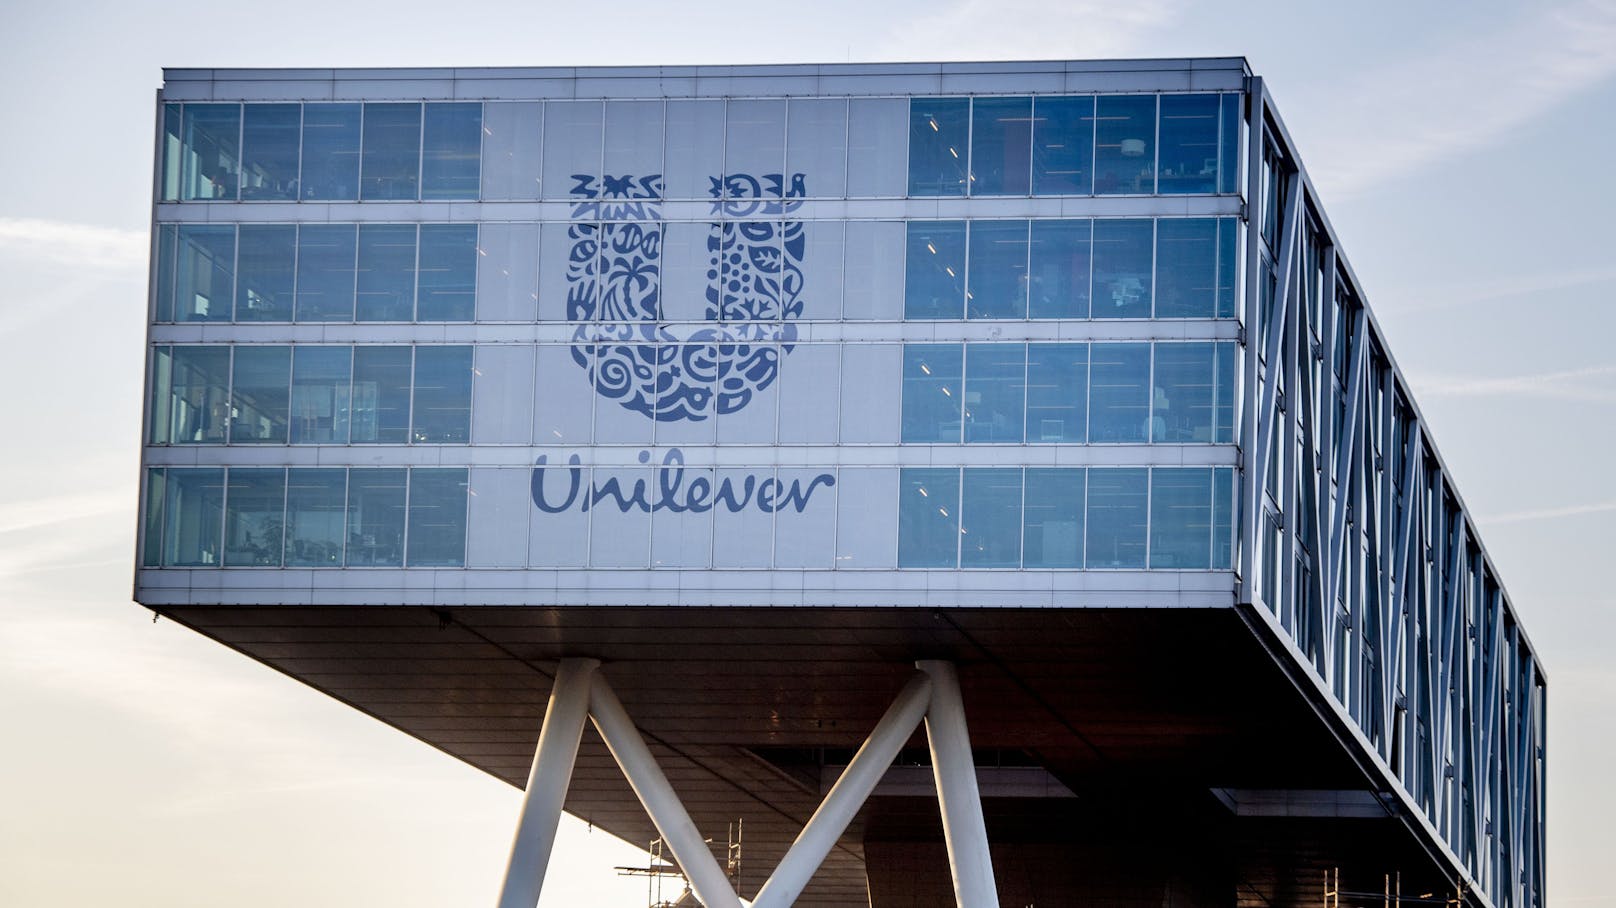 Der Verbrauchsgüterkonzern Unilever will künftig den Begriff "normal" nicht mehr zur Produktbeschreibung verwenden. 